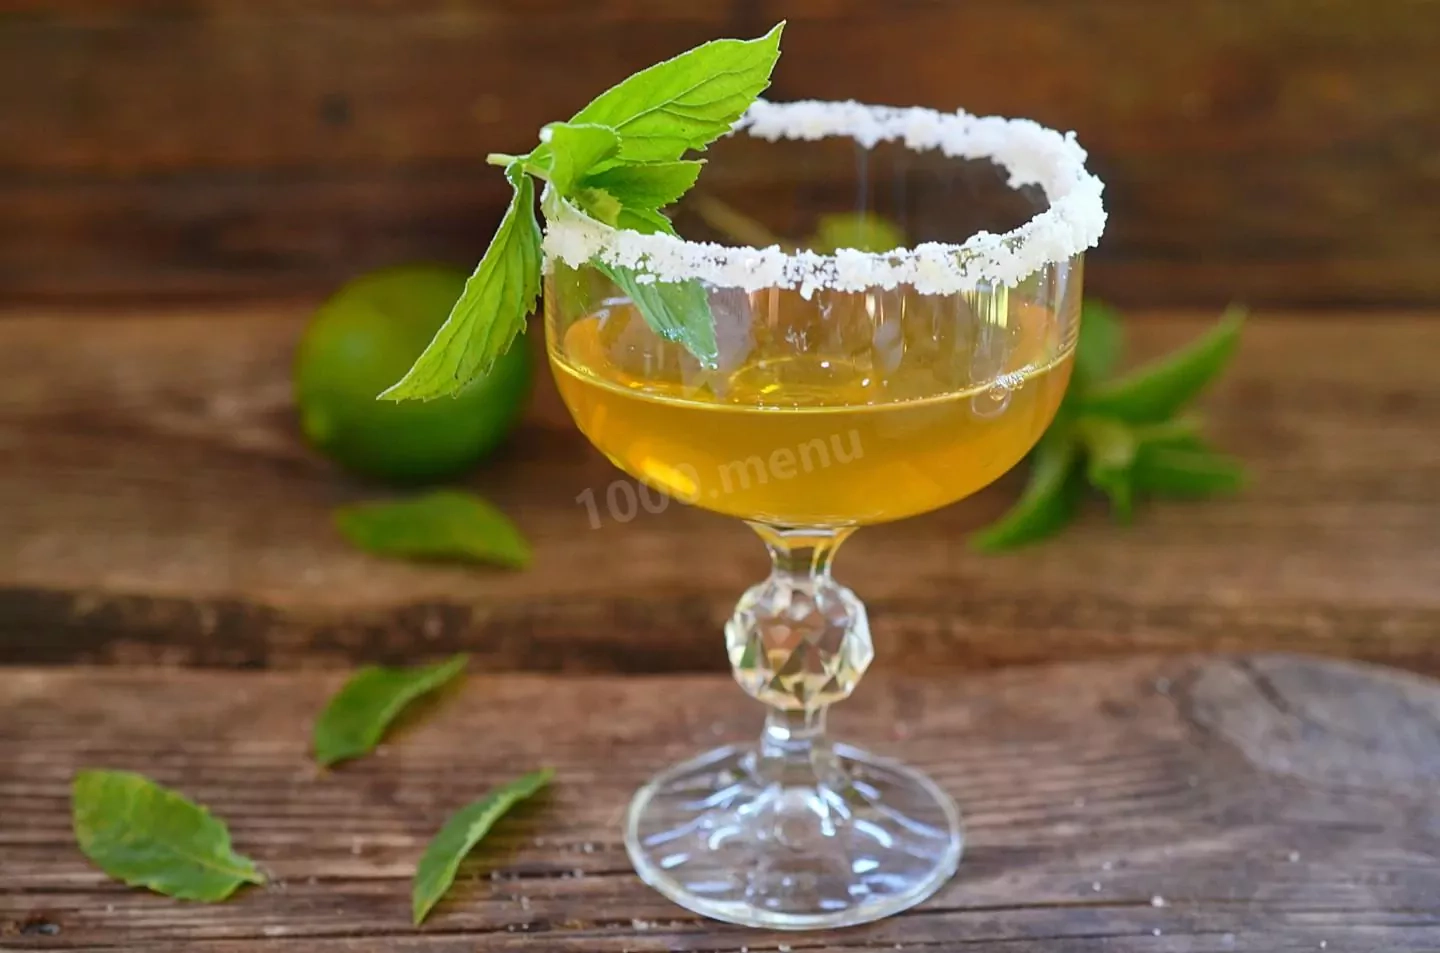 Koktajl klasyczna margarita z tequilą - przepis na drink